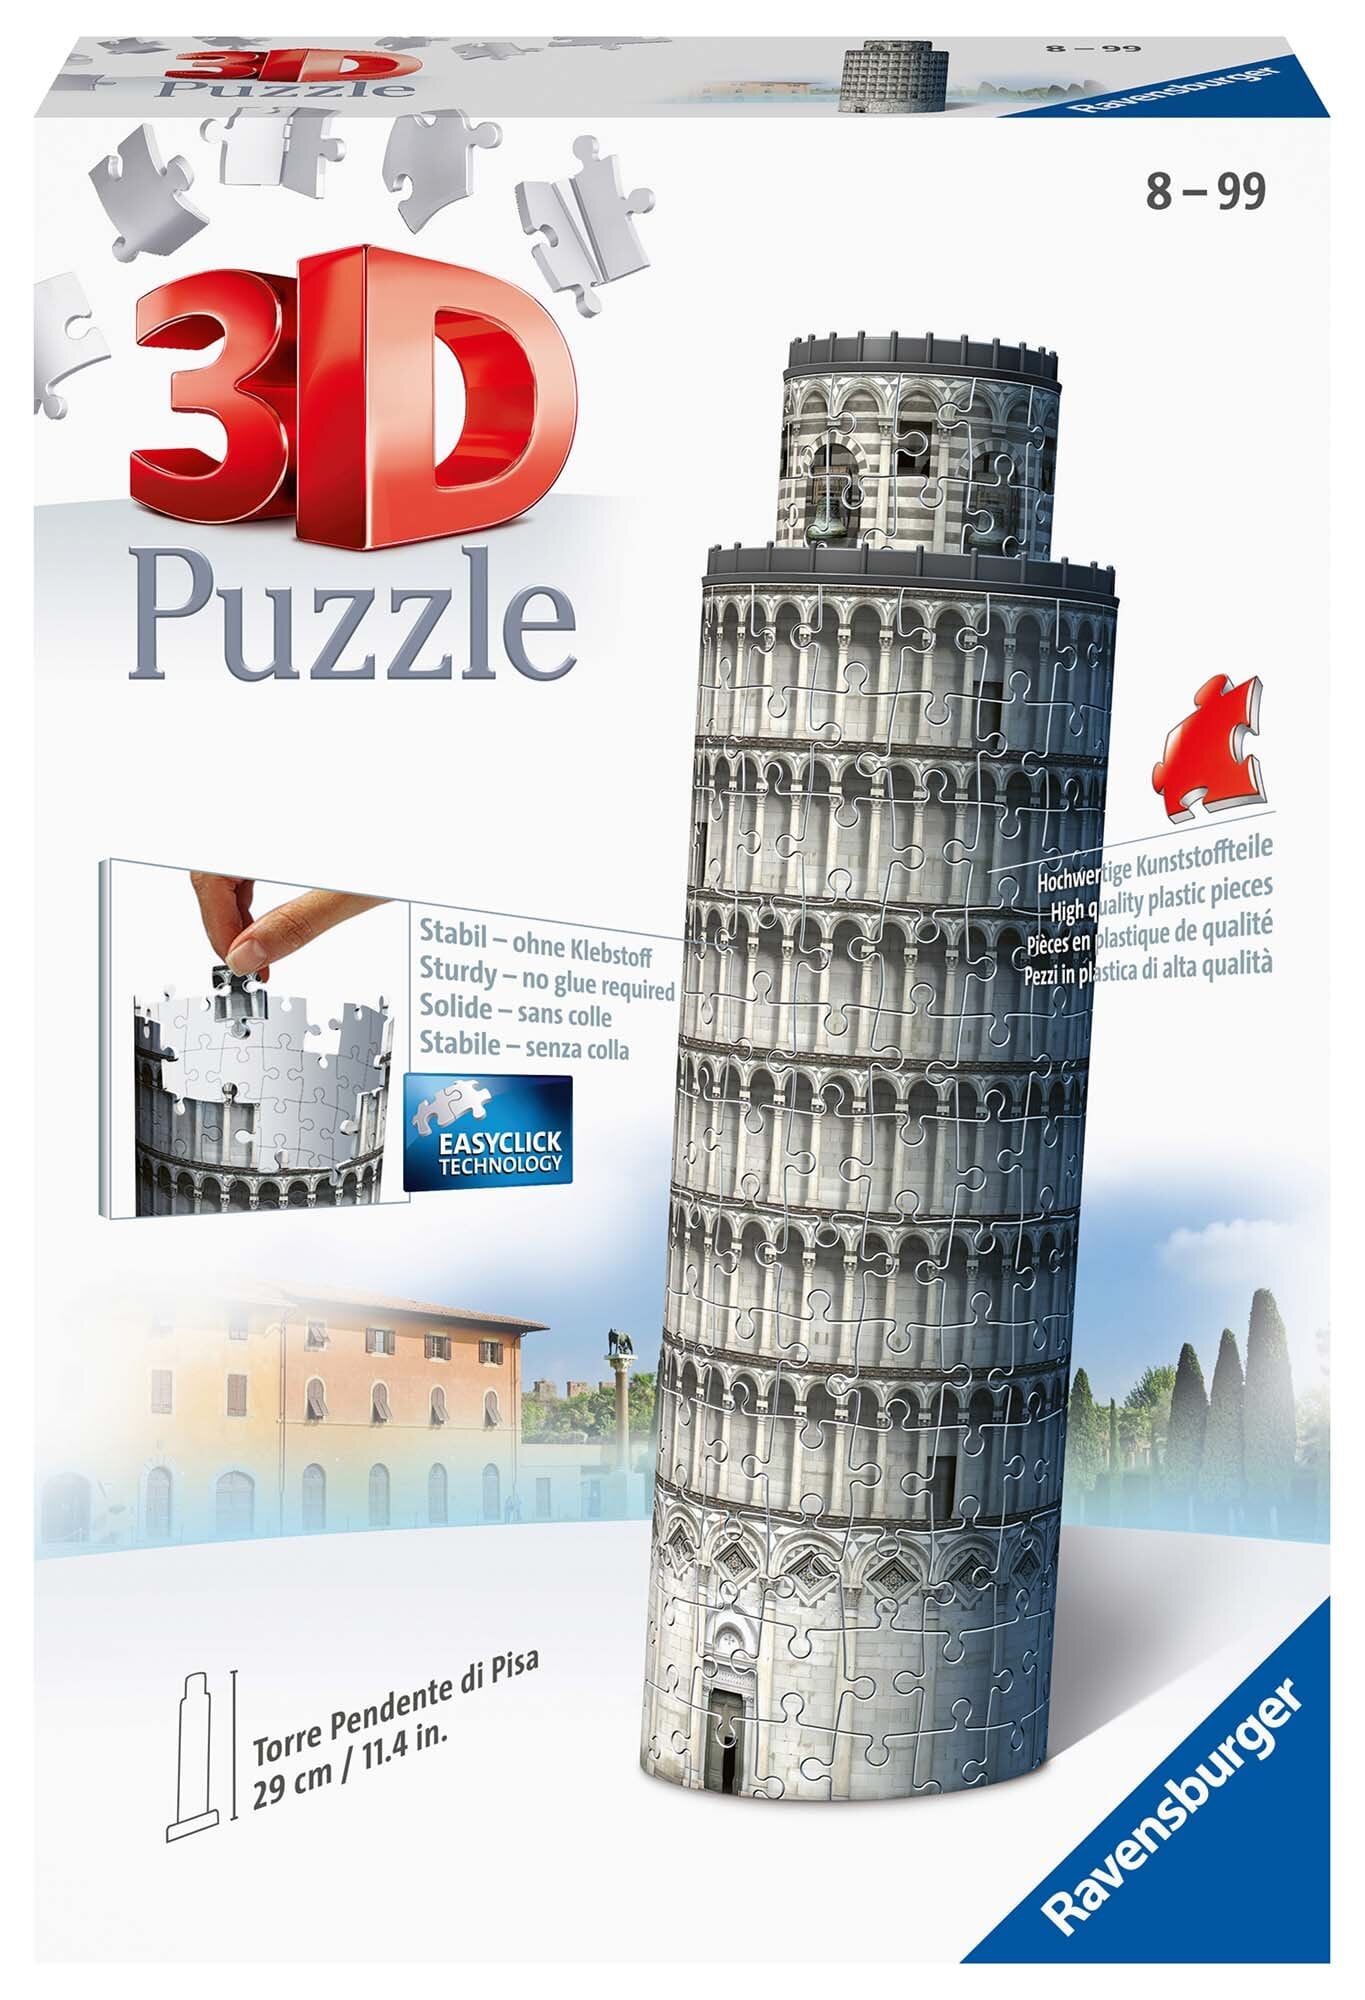 Ravensburger 3D Puslespill, Leaning Tower of Pisa 216 brikker